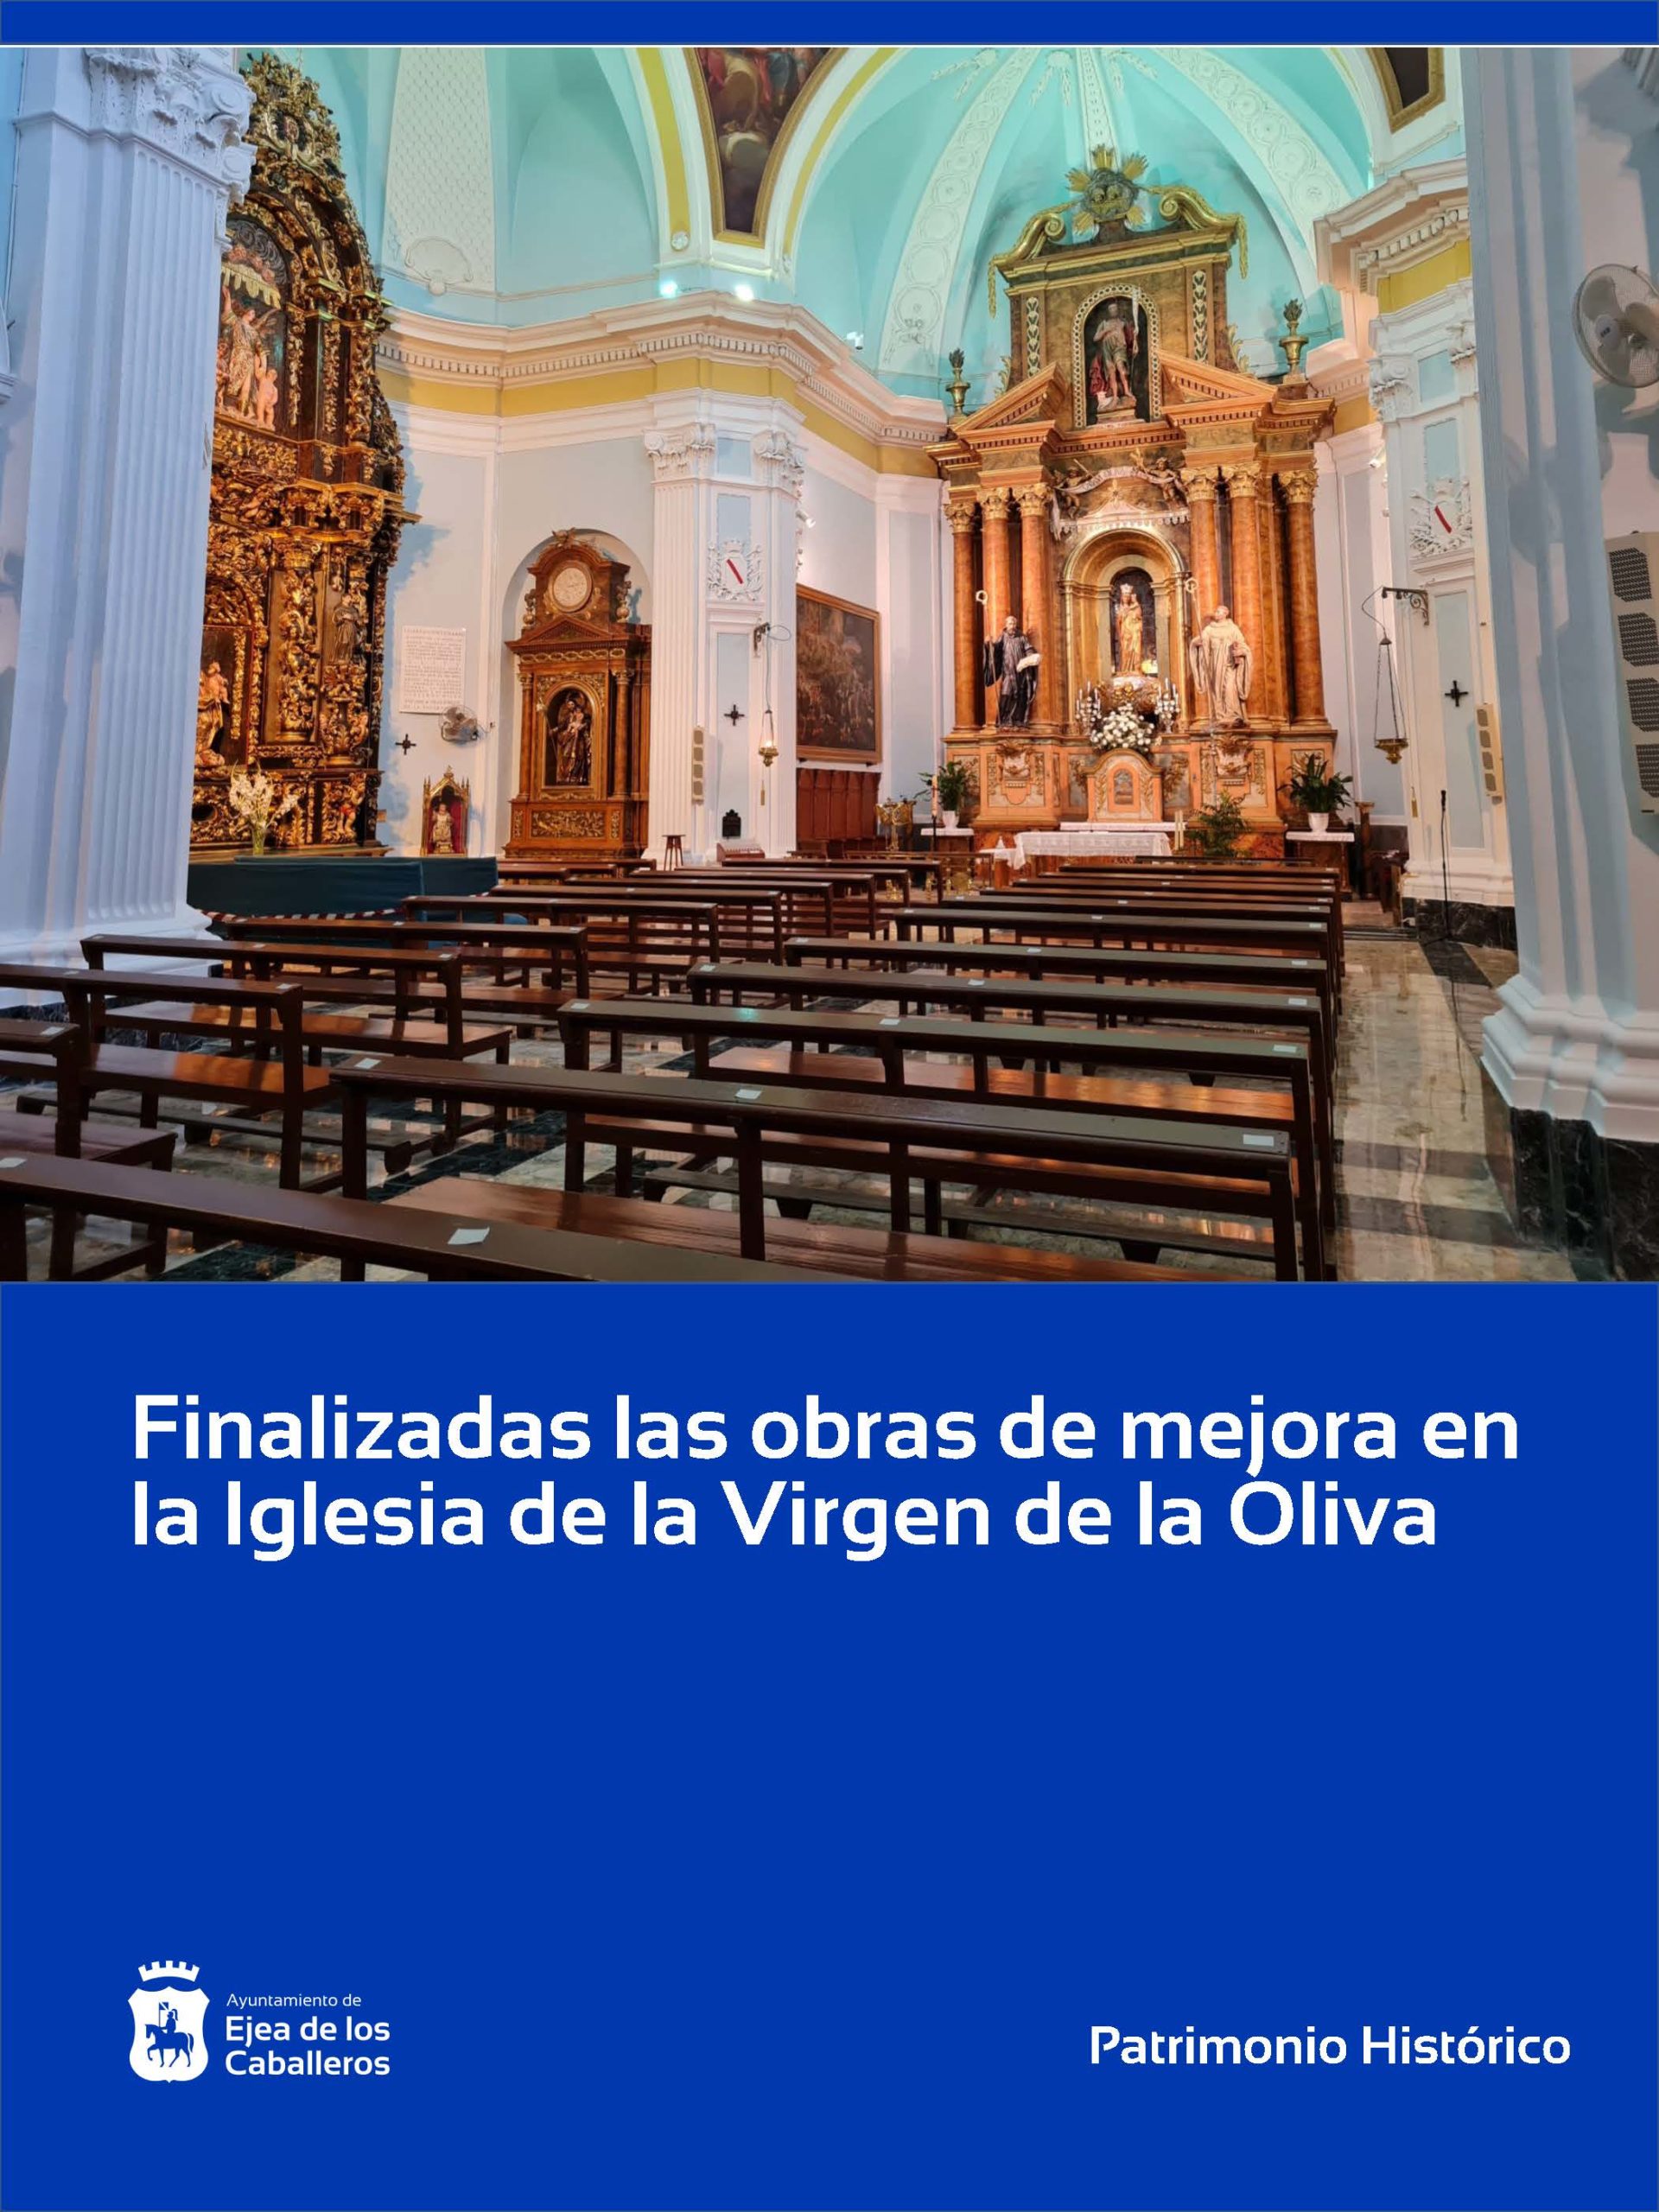 En este momento estás viendo Finalizadas las obras de mejora de la iglesia de la Virgen de la Oliva en Ejea